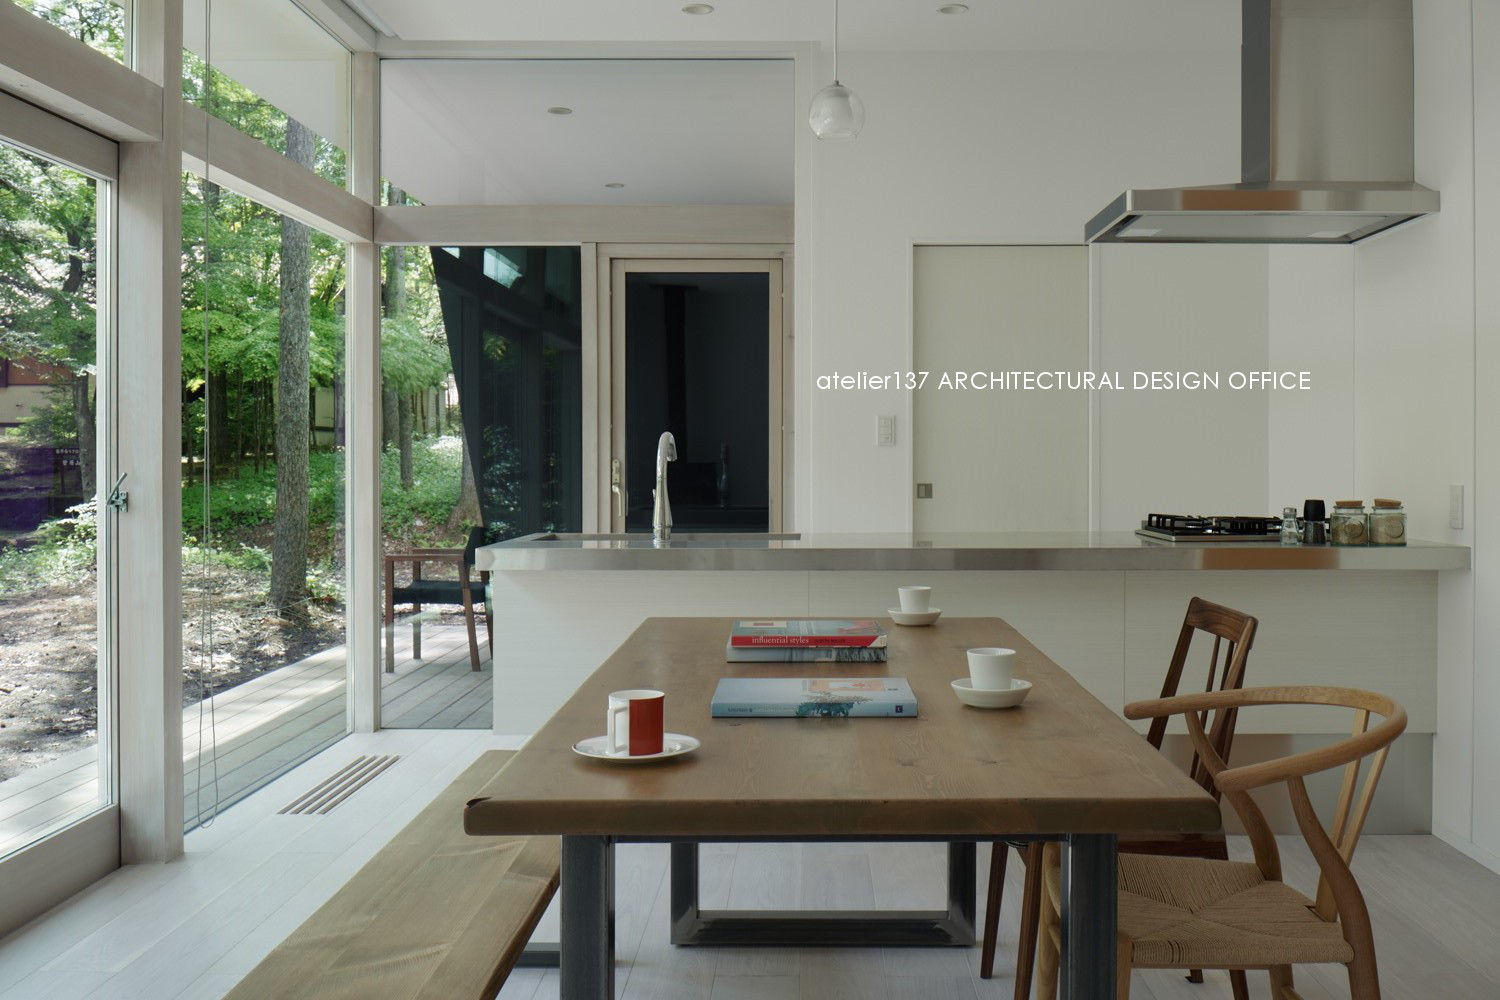 036軽井沢Kさんの家, atelier137 ARCHITECTURAL DESIGN OFFICE atelier137 ARCHITECTURAL DESIGN OFFICE Cocinas de estilo moderno